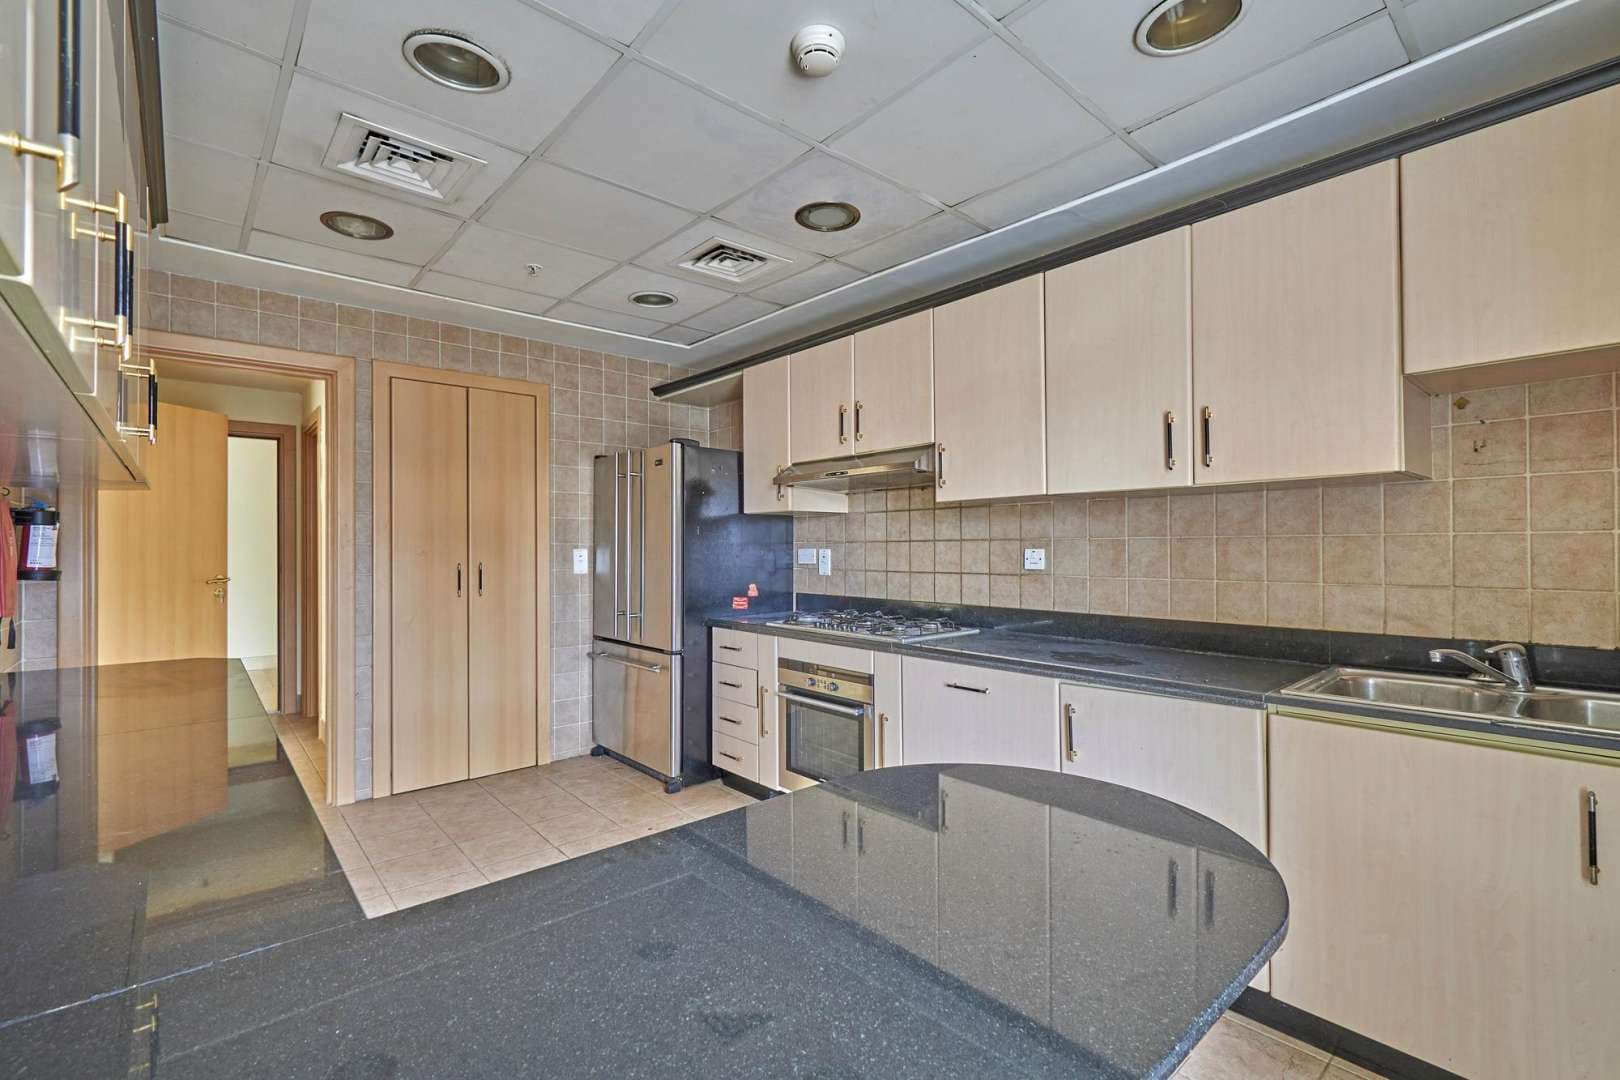 4 Bedroom Apartment For Rent Marina Quay West Lp05531 57f42e564395580.jpg